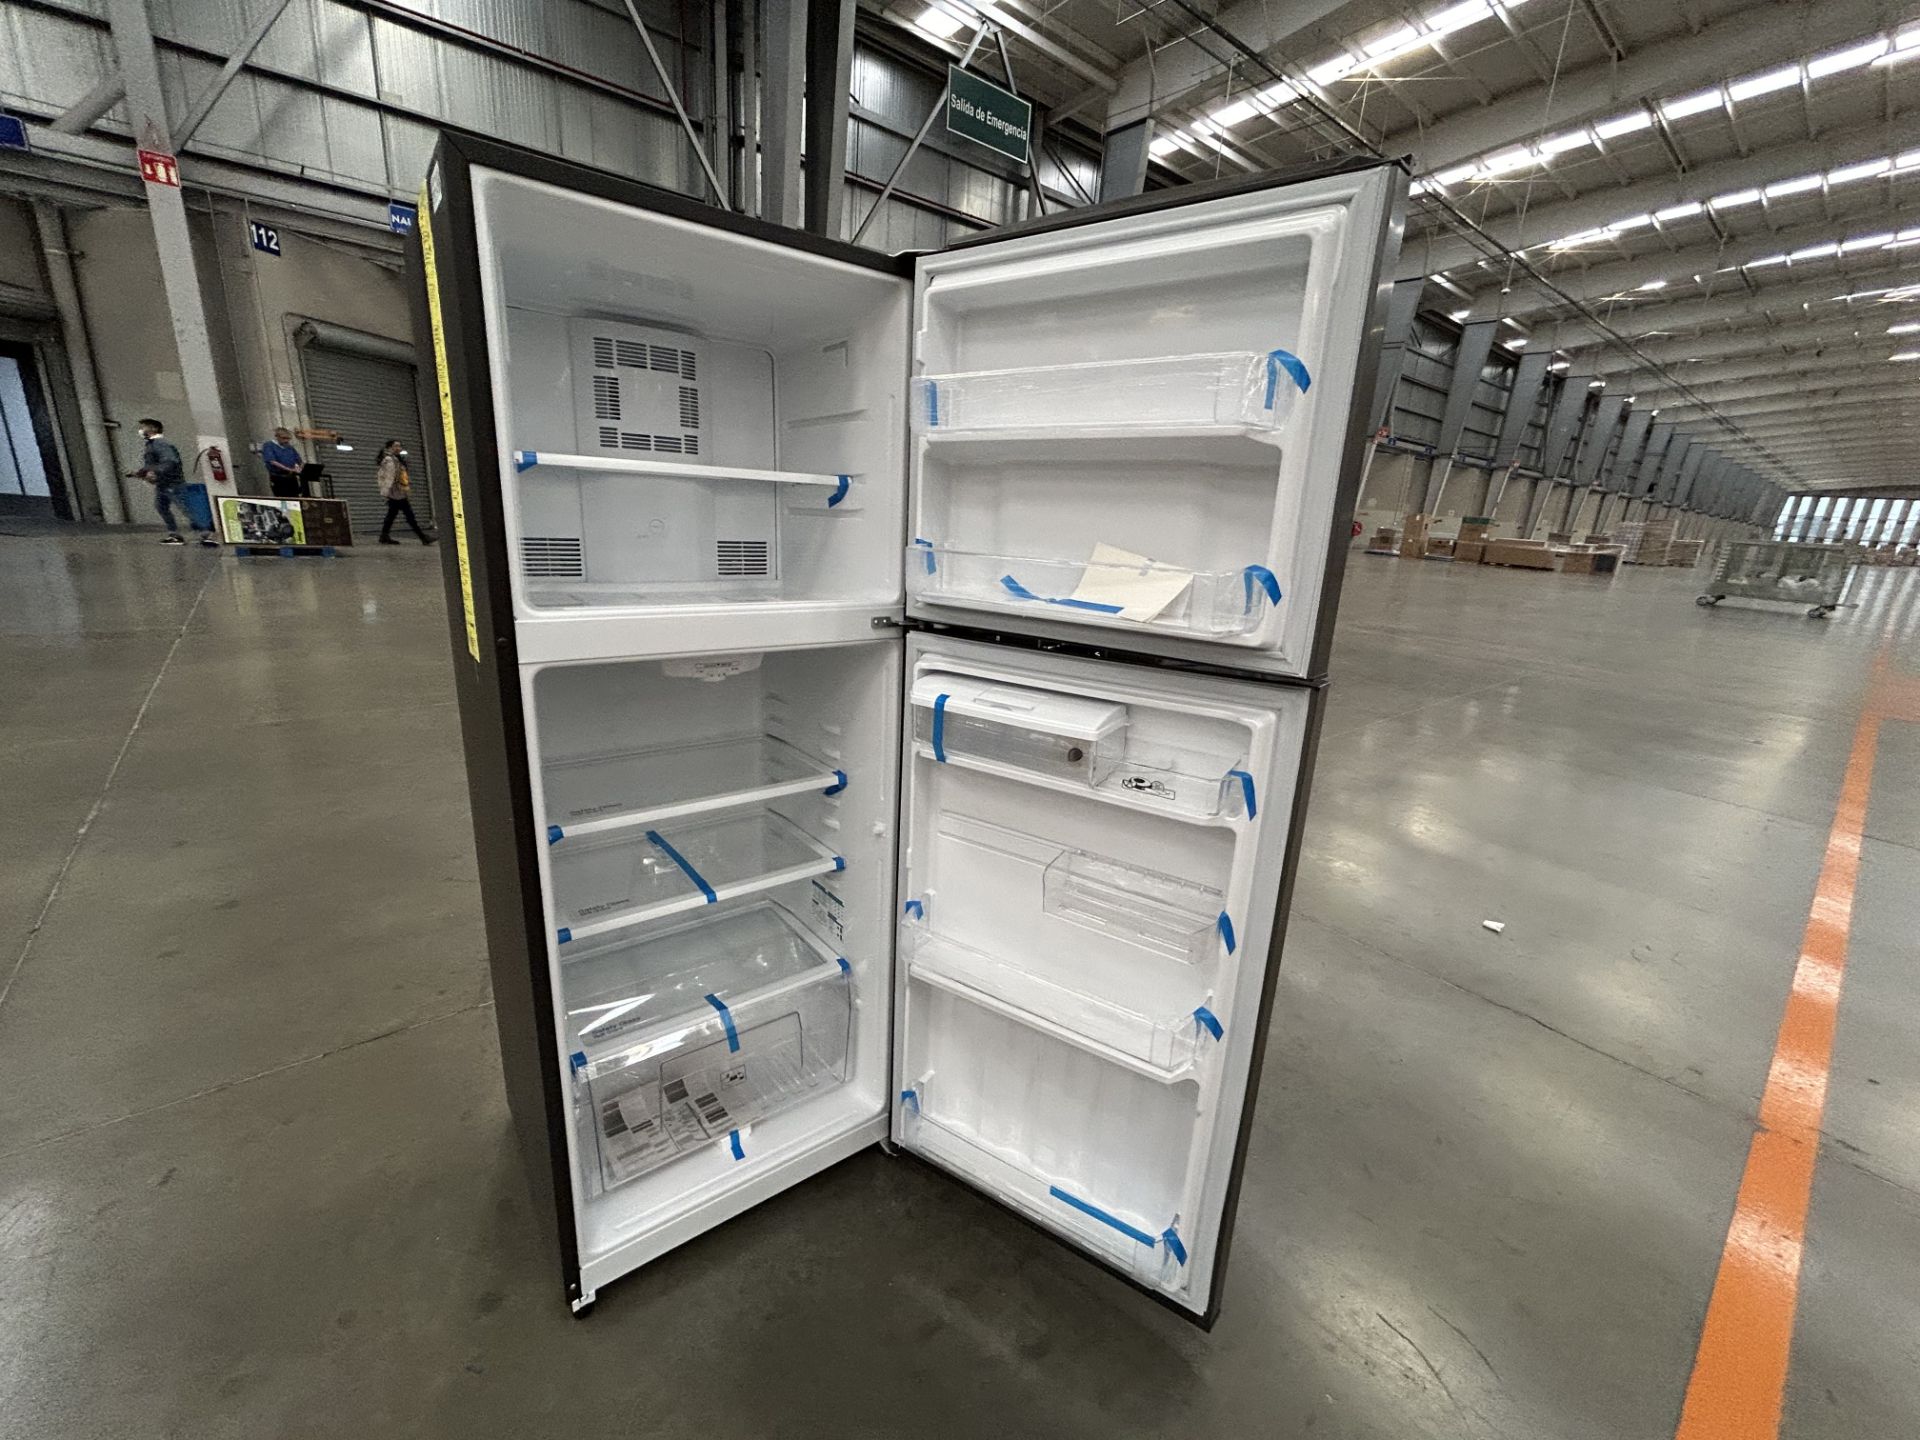 Lote de 2 refrigeradores contiene: 1 refrigerador con dispensador de agua Marca MABE, Modelo RME360 - Image 5 of 6